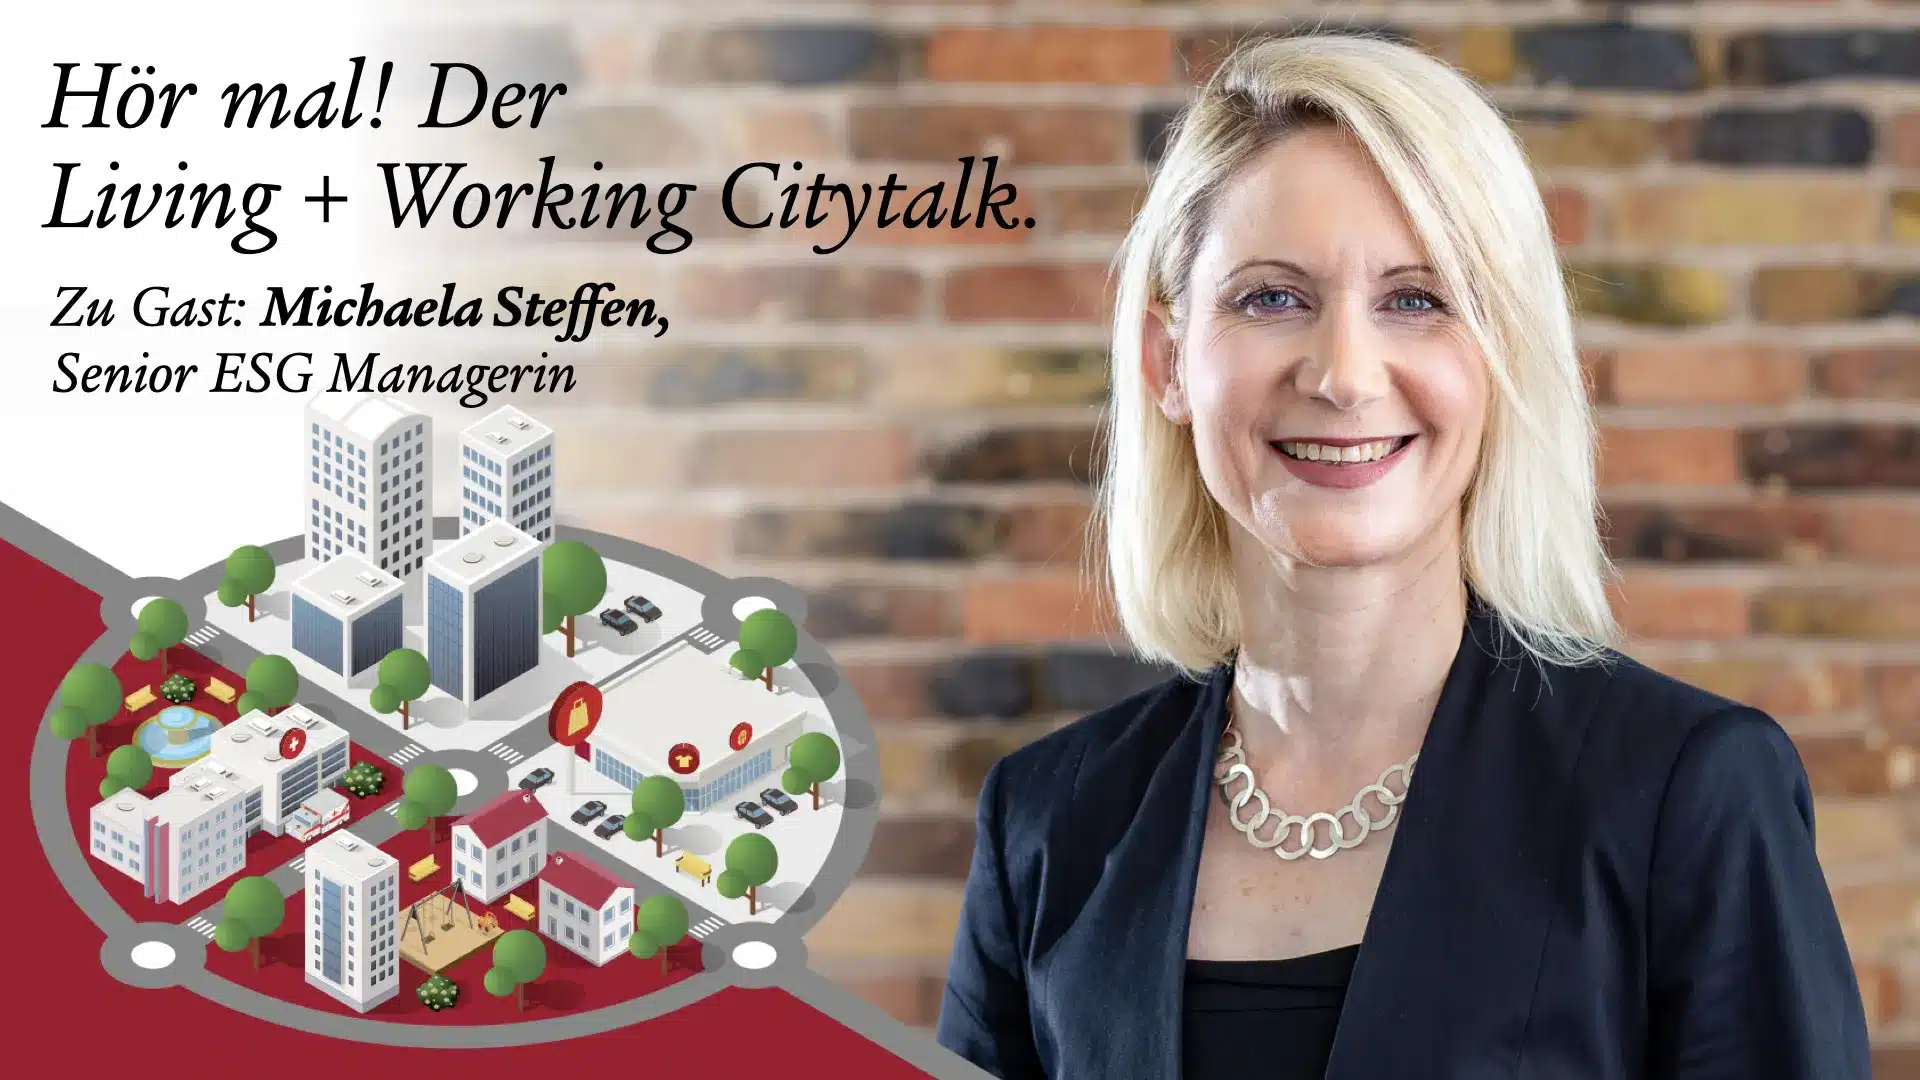 Hör mal! Der Living + Working Cityltalk mit Michaela Steffen, Senior ESG-Managerin